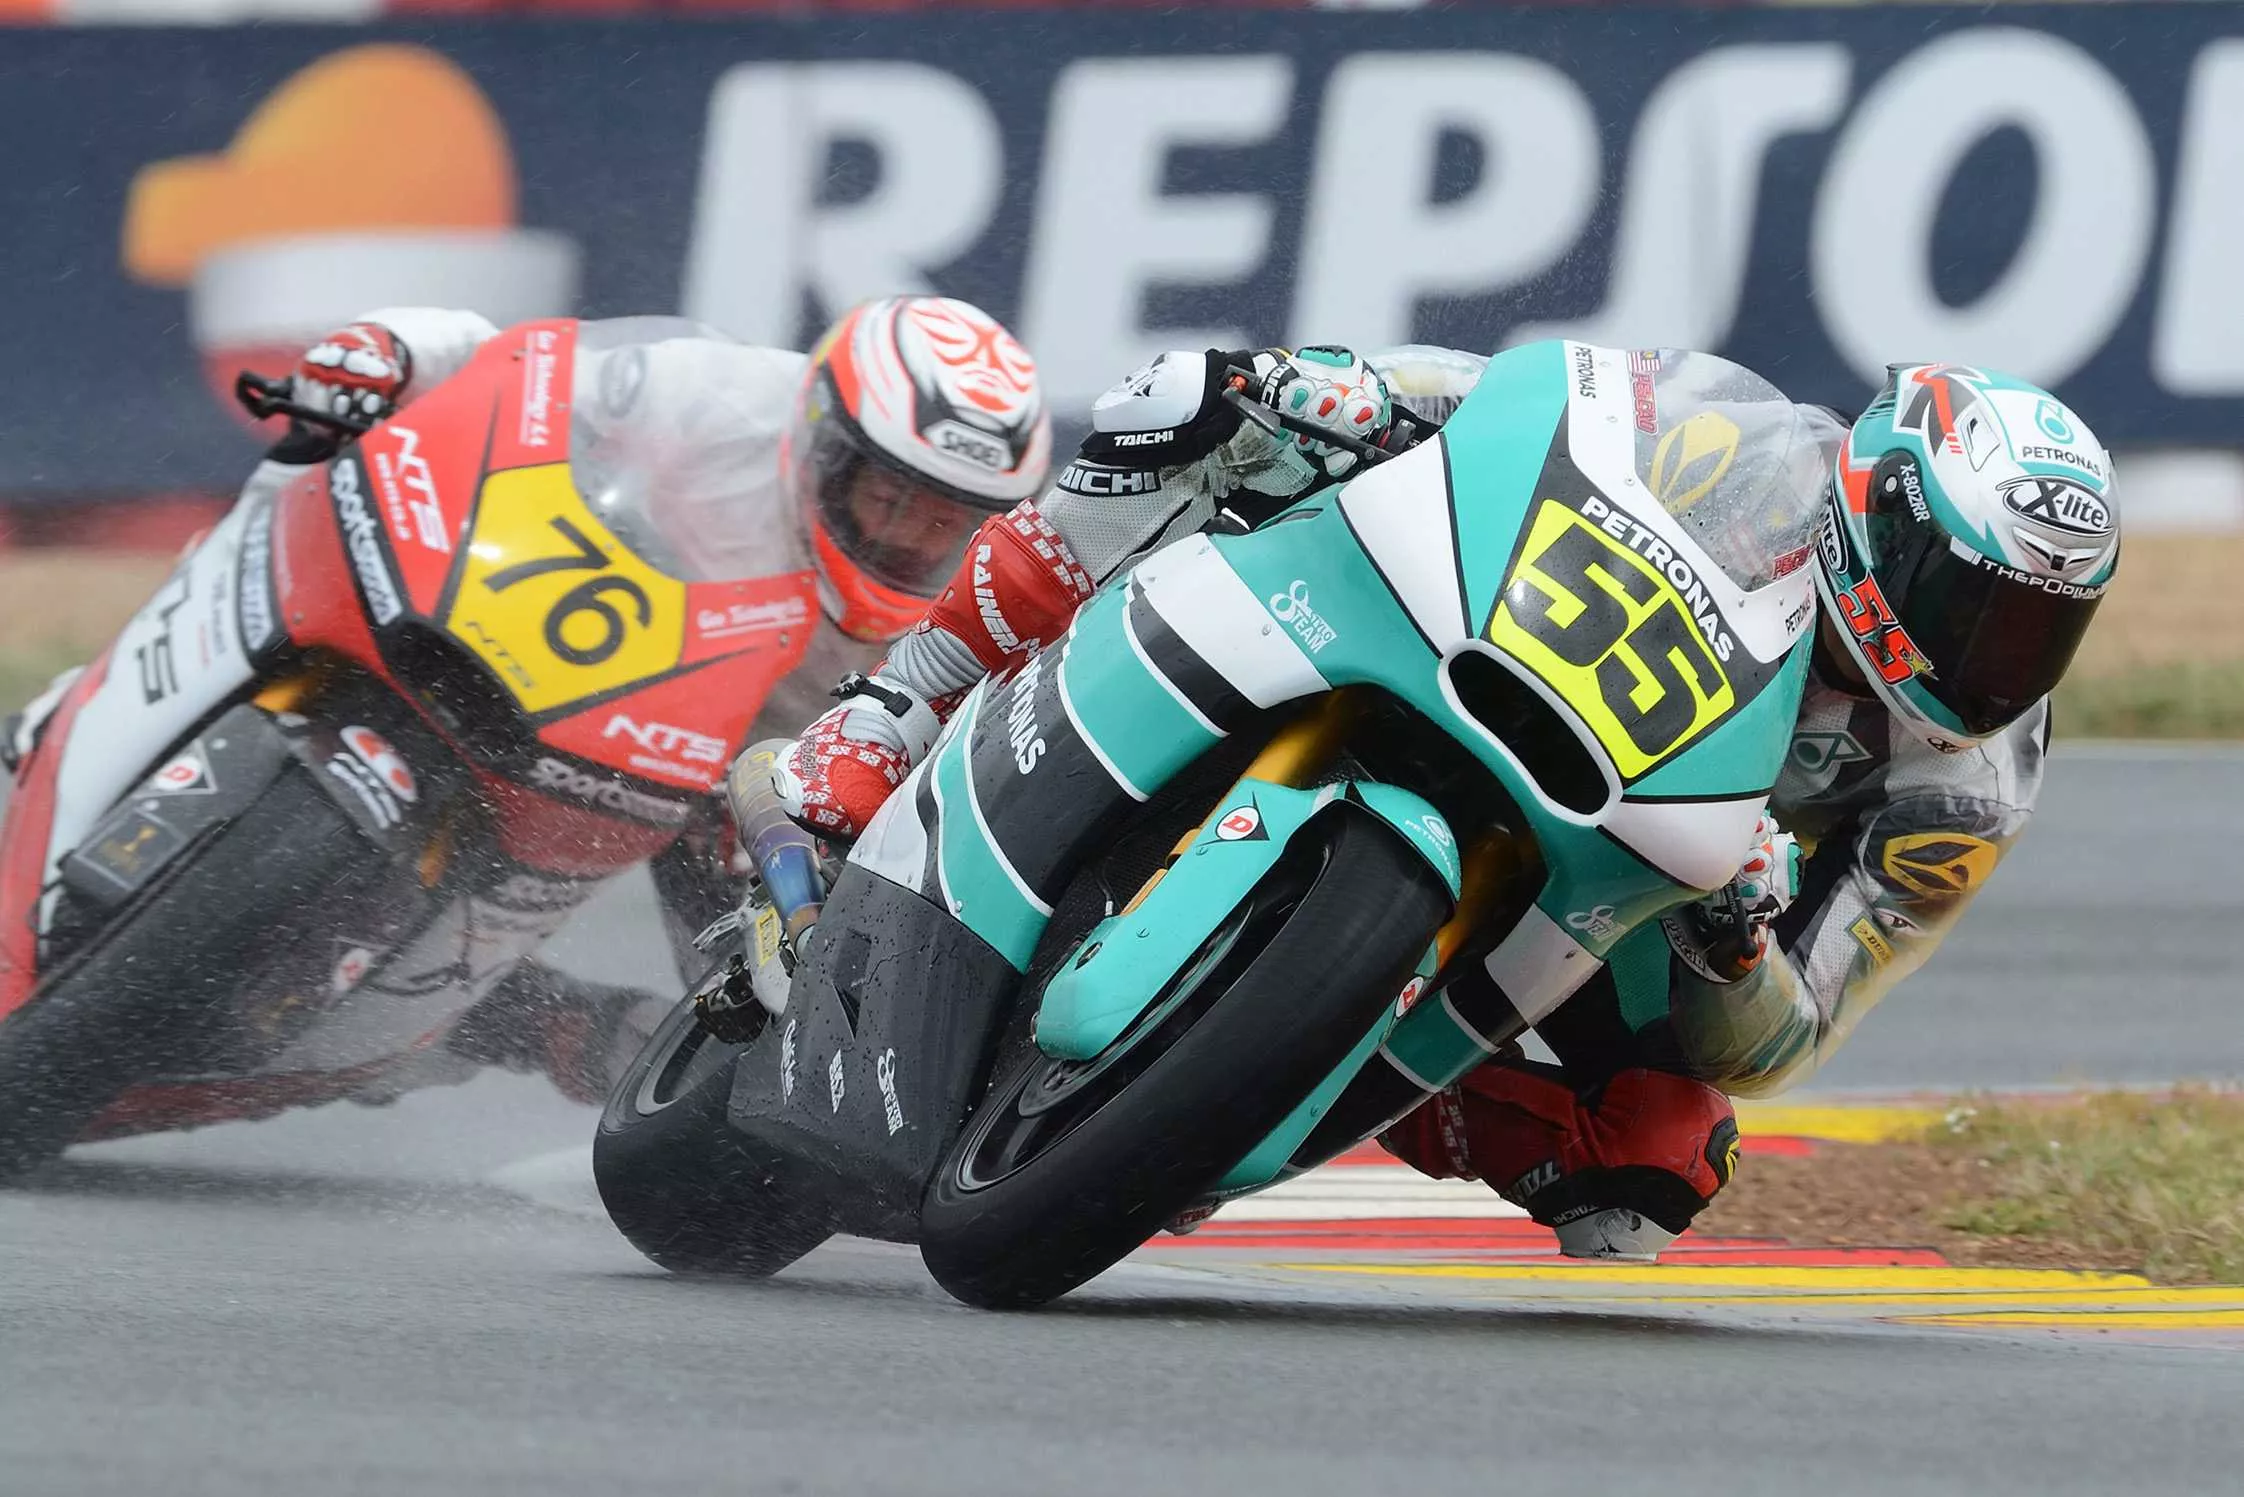 Albacete Circuit in Spain, Europe | Racing,Motorcycles - Rated 4.1